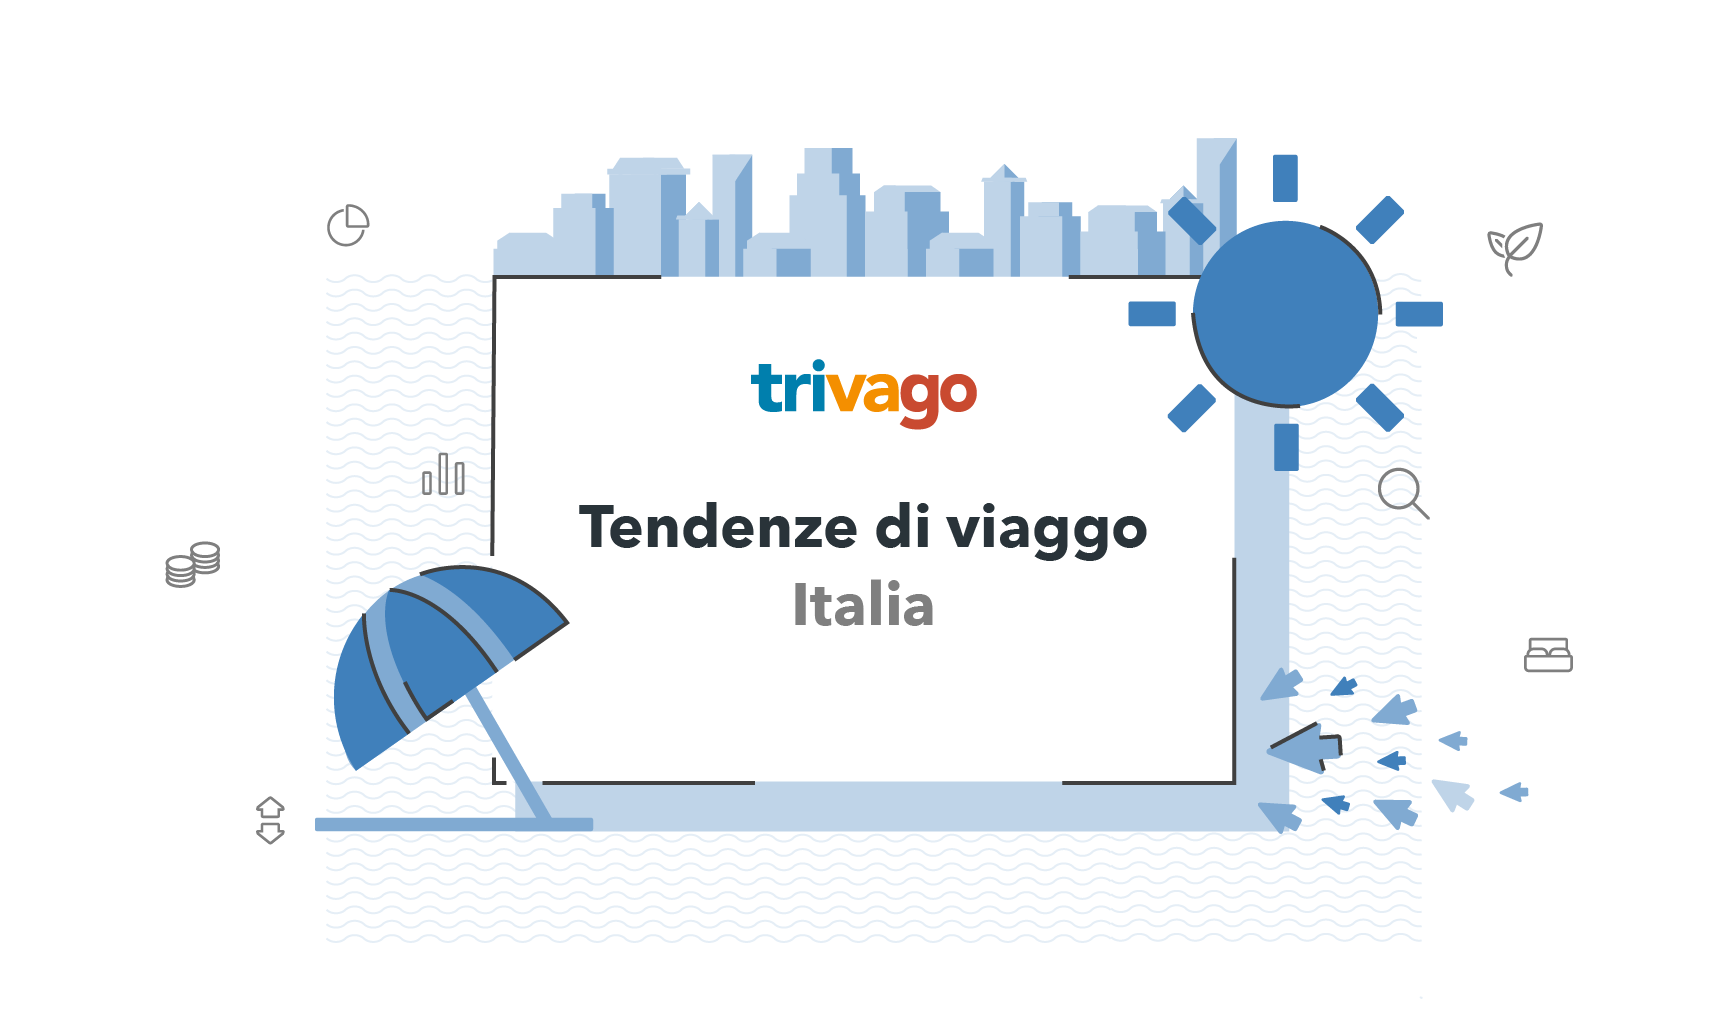 Estate 2018: tendenze di viaggio in Italia